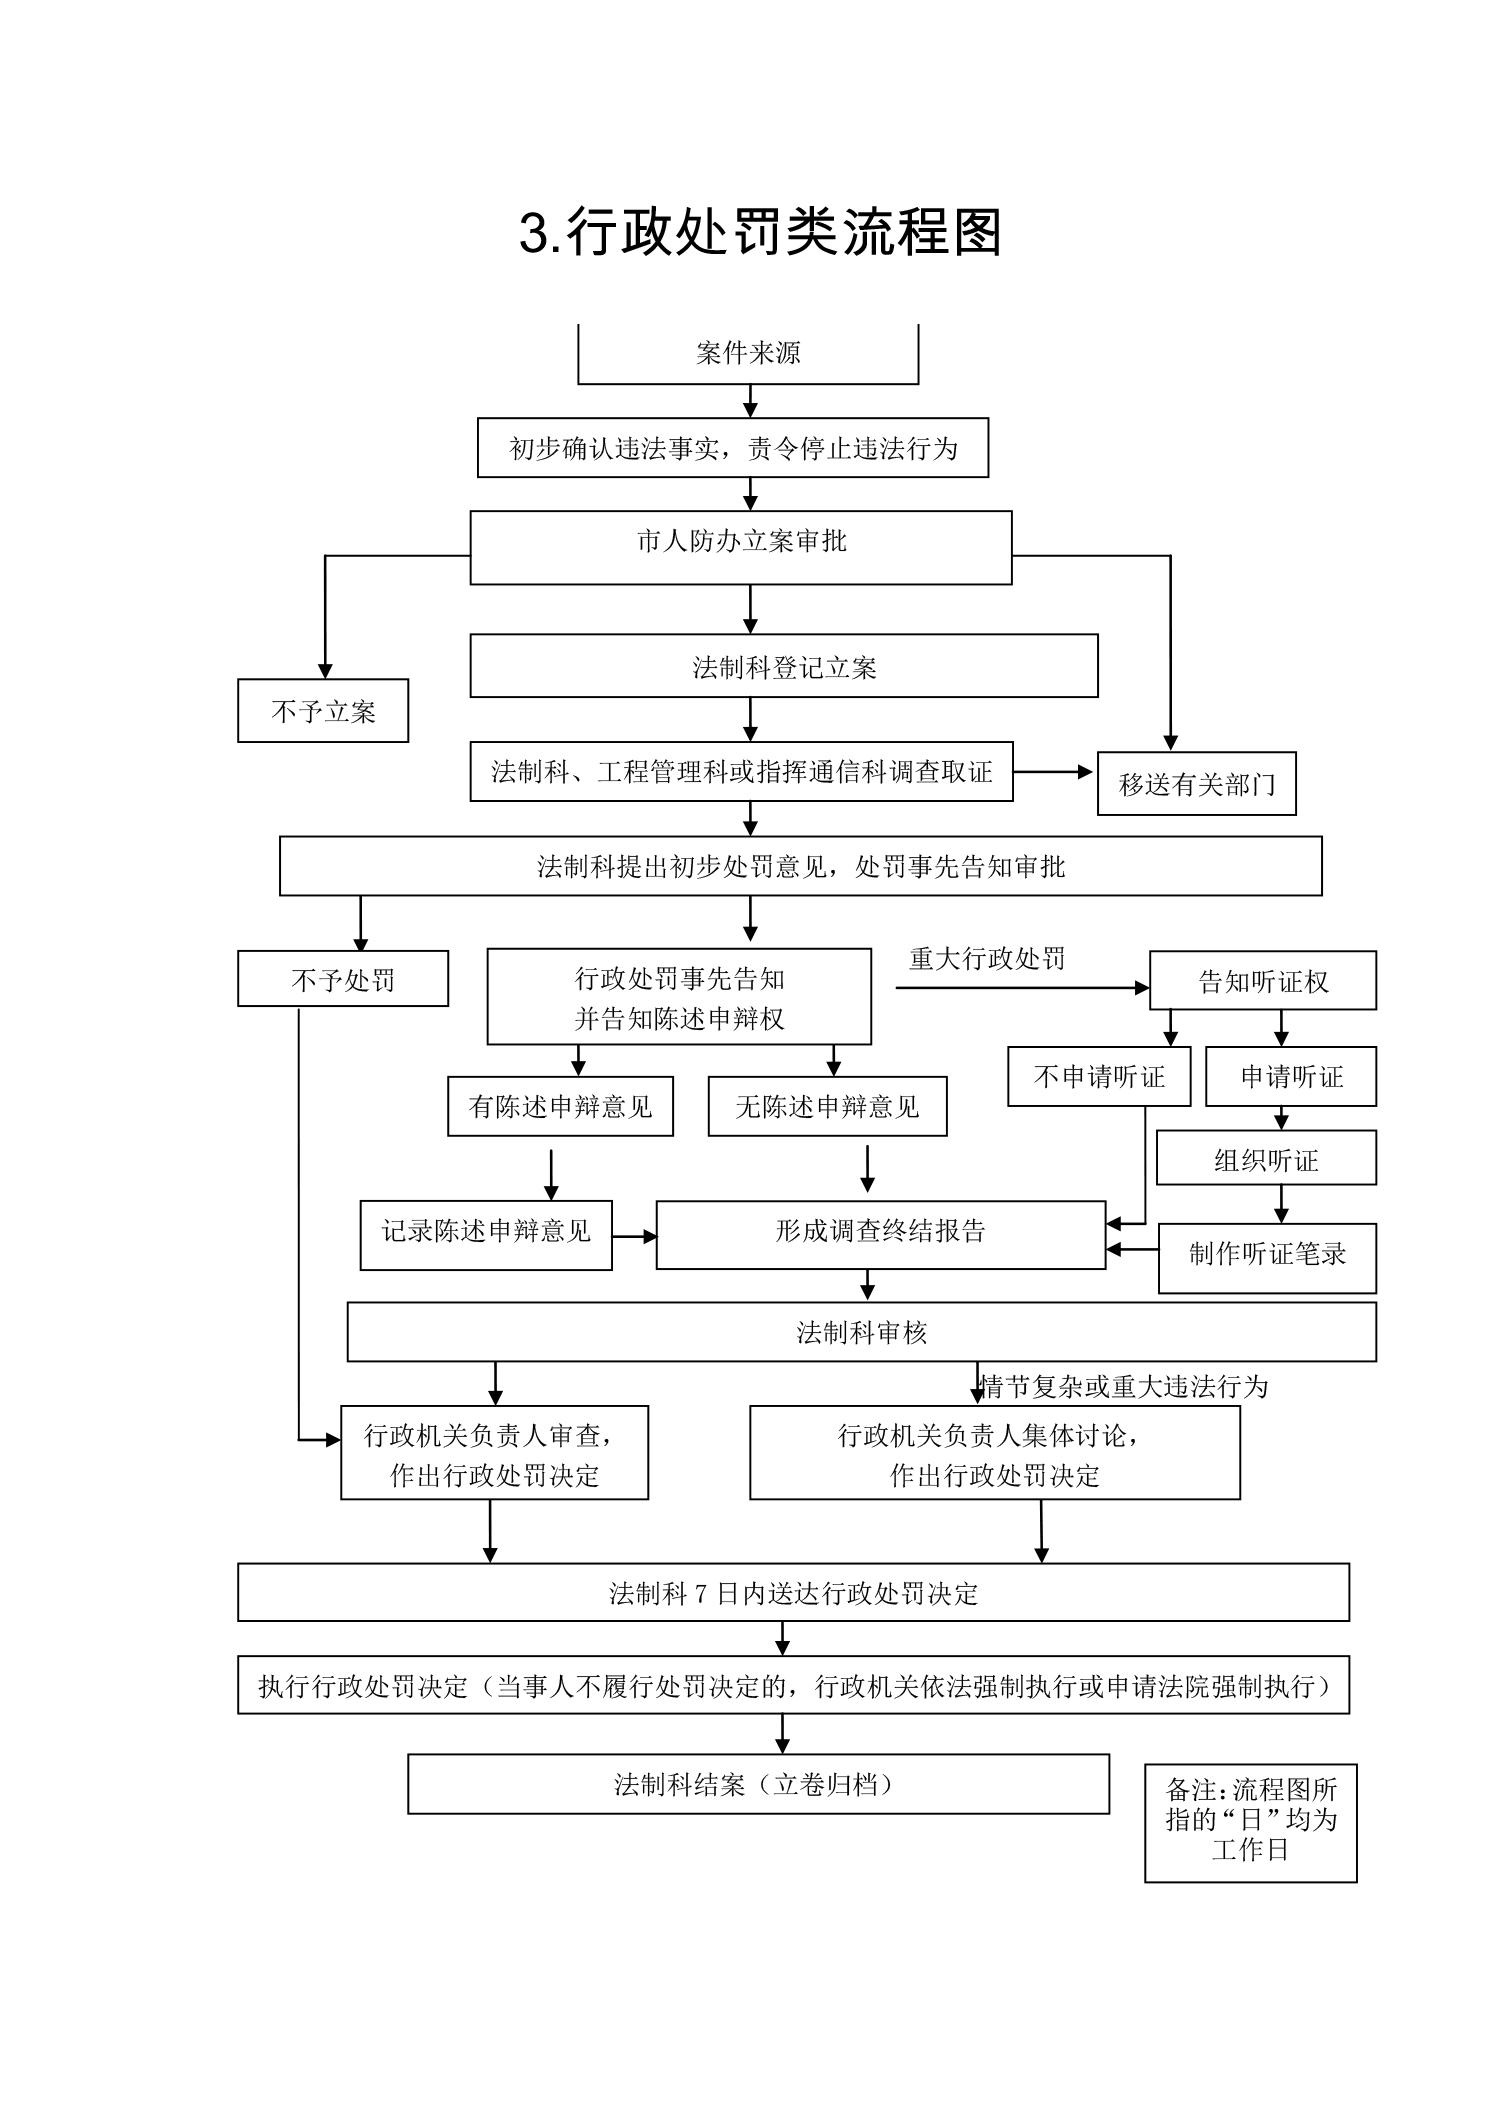 开封市人民防空办公室行政职权运行流程图-3.jpg